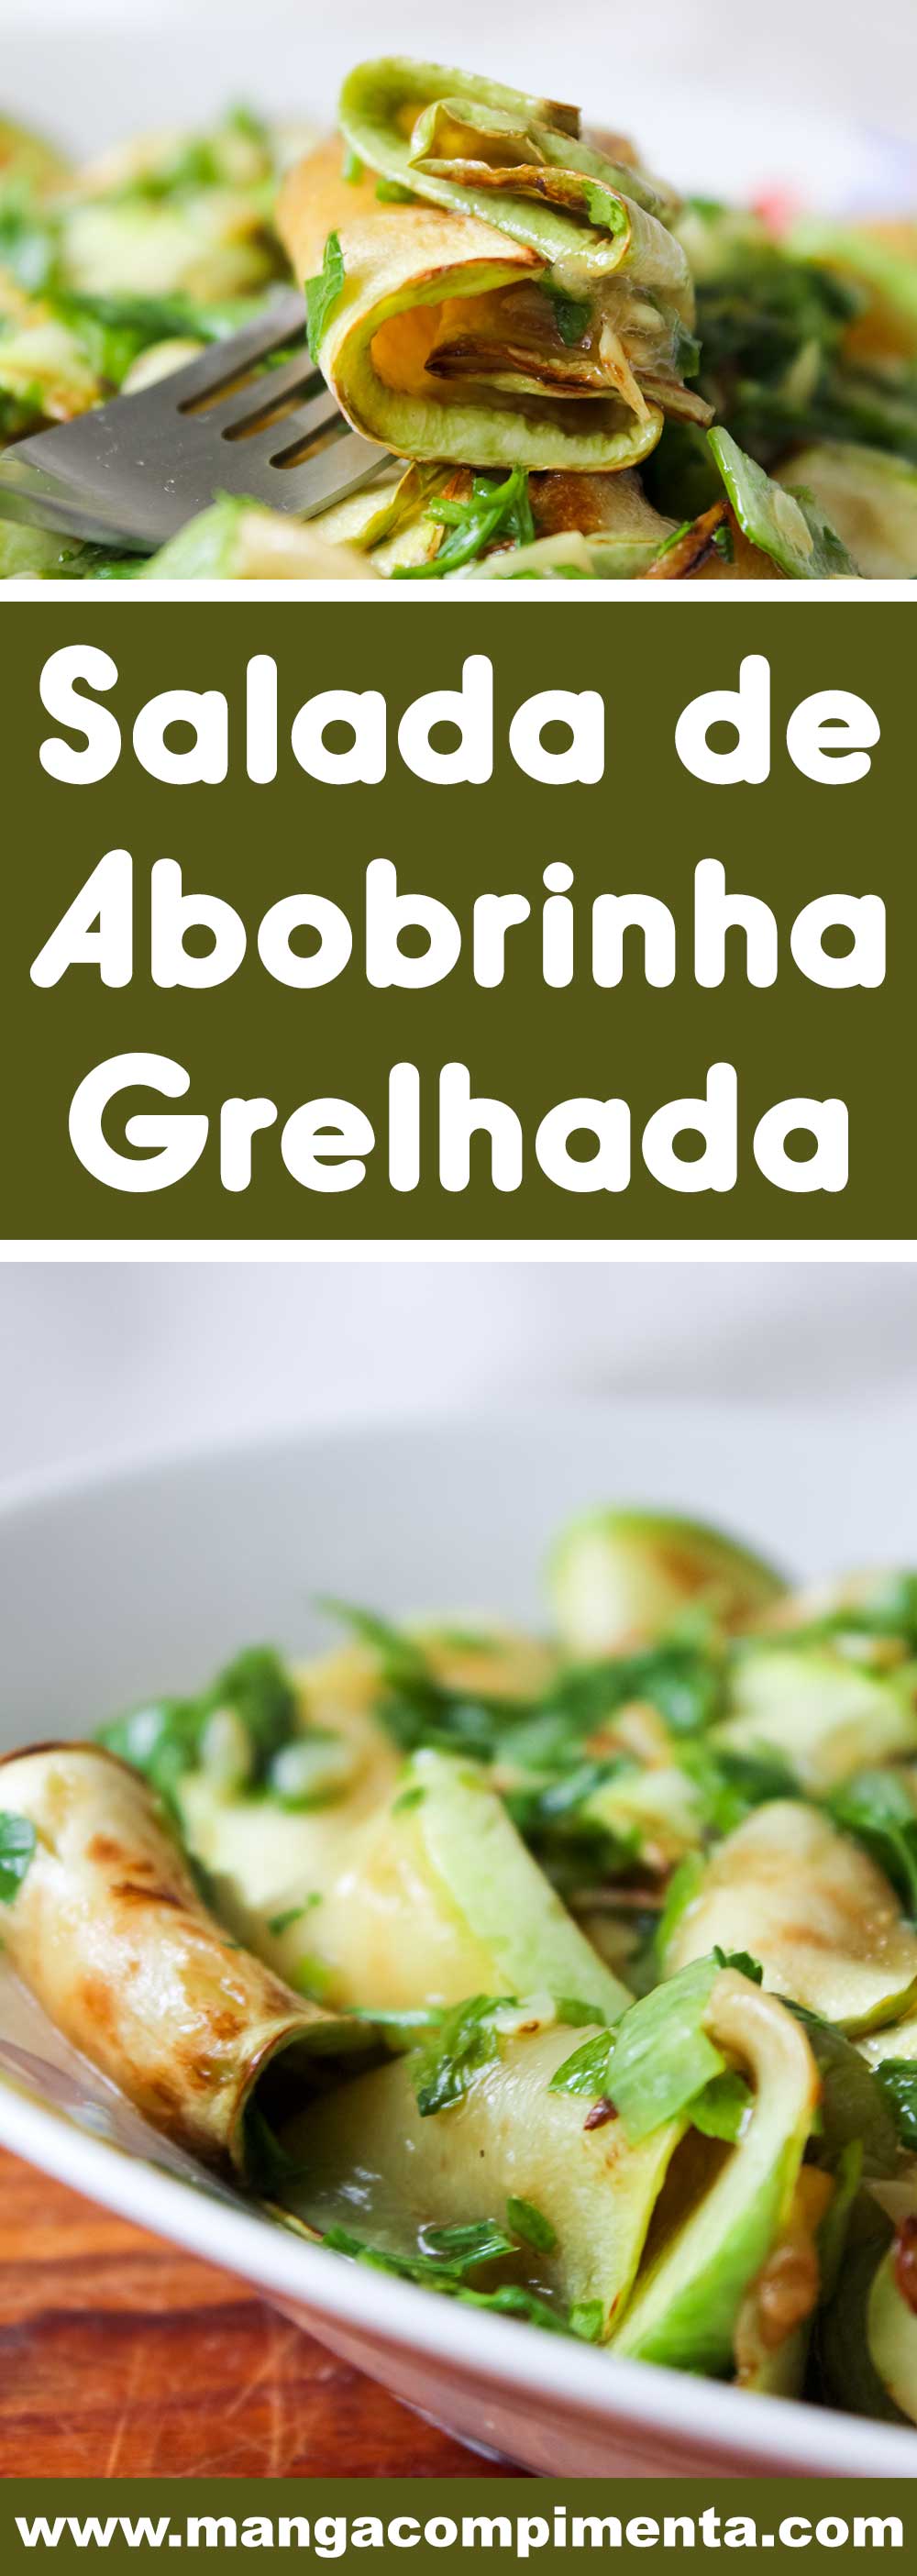 Receita de Salada de Abobrinha Grelhada - uma entrada deliciosa para servir em qualquer época do ano.